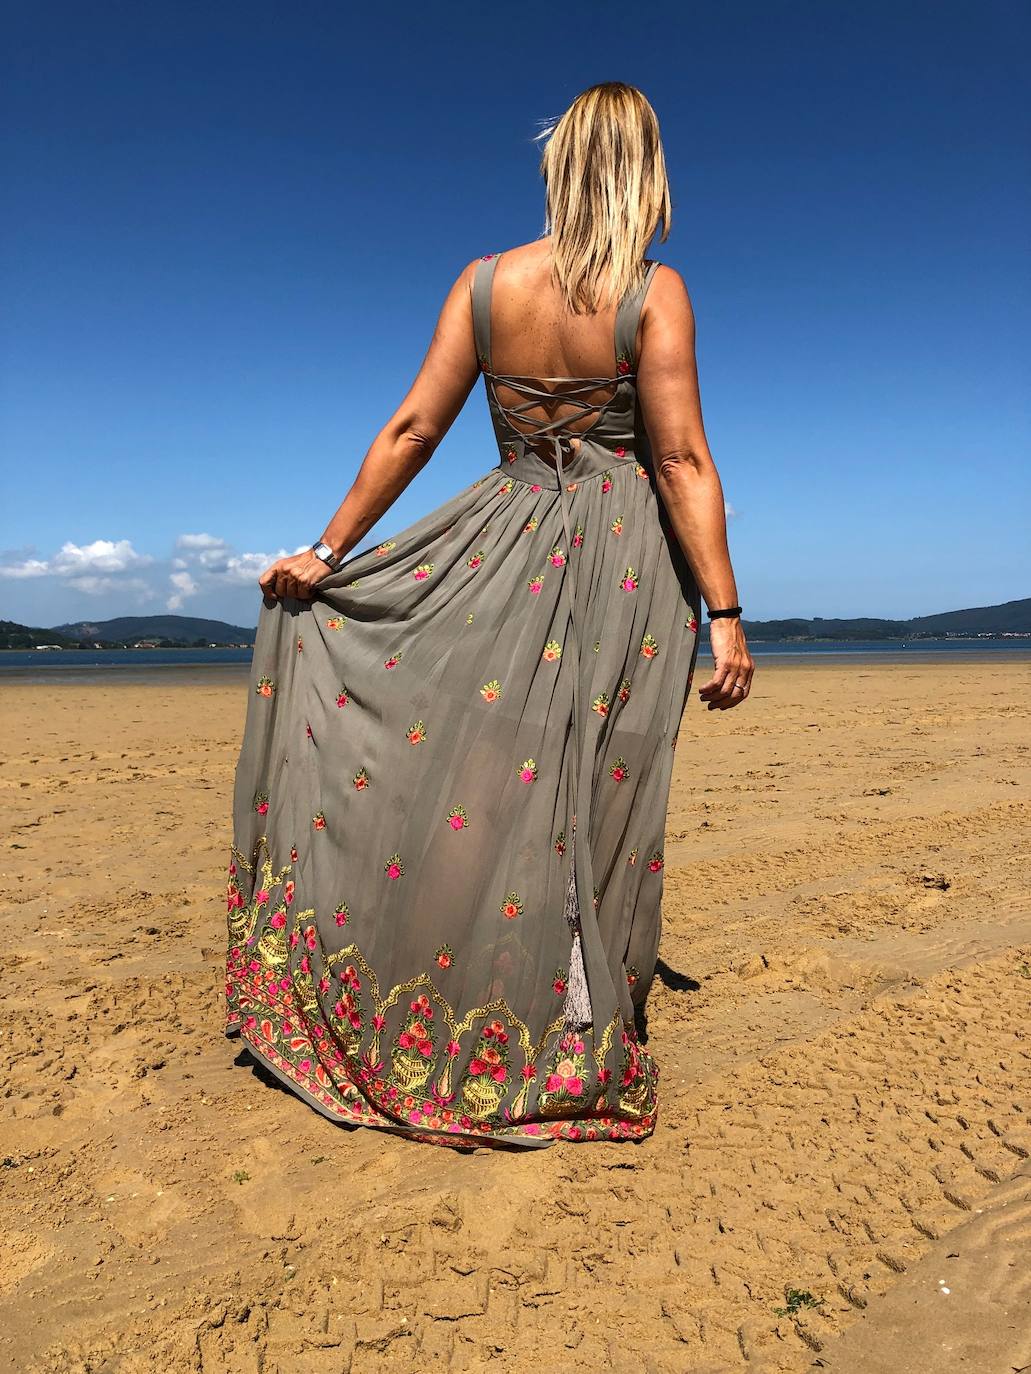 La marca de ropa de Ruth Vilda, Luna Maga Ibiza, fusiona la tradición artesanal y el encanto de África, Asia y Oriente con el espíritu hippie de la isla balear. Aquí cuatro vestidos especiales y muy románticos diseñados por ella